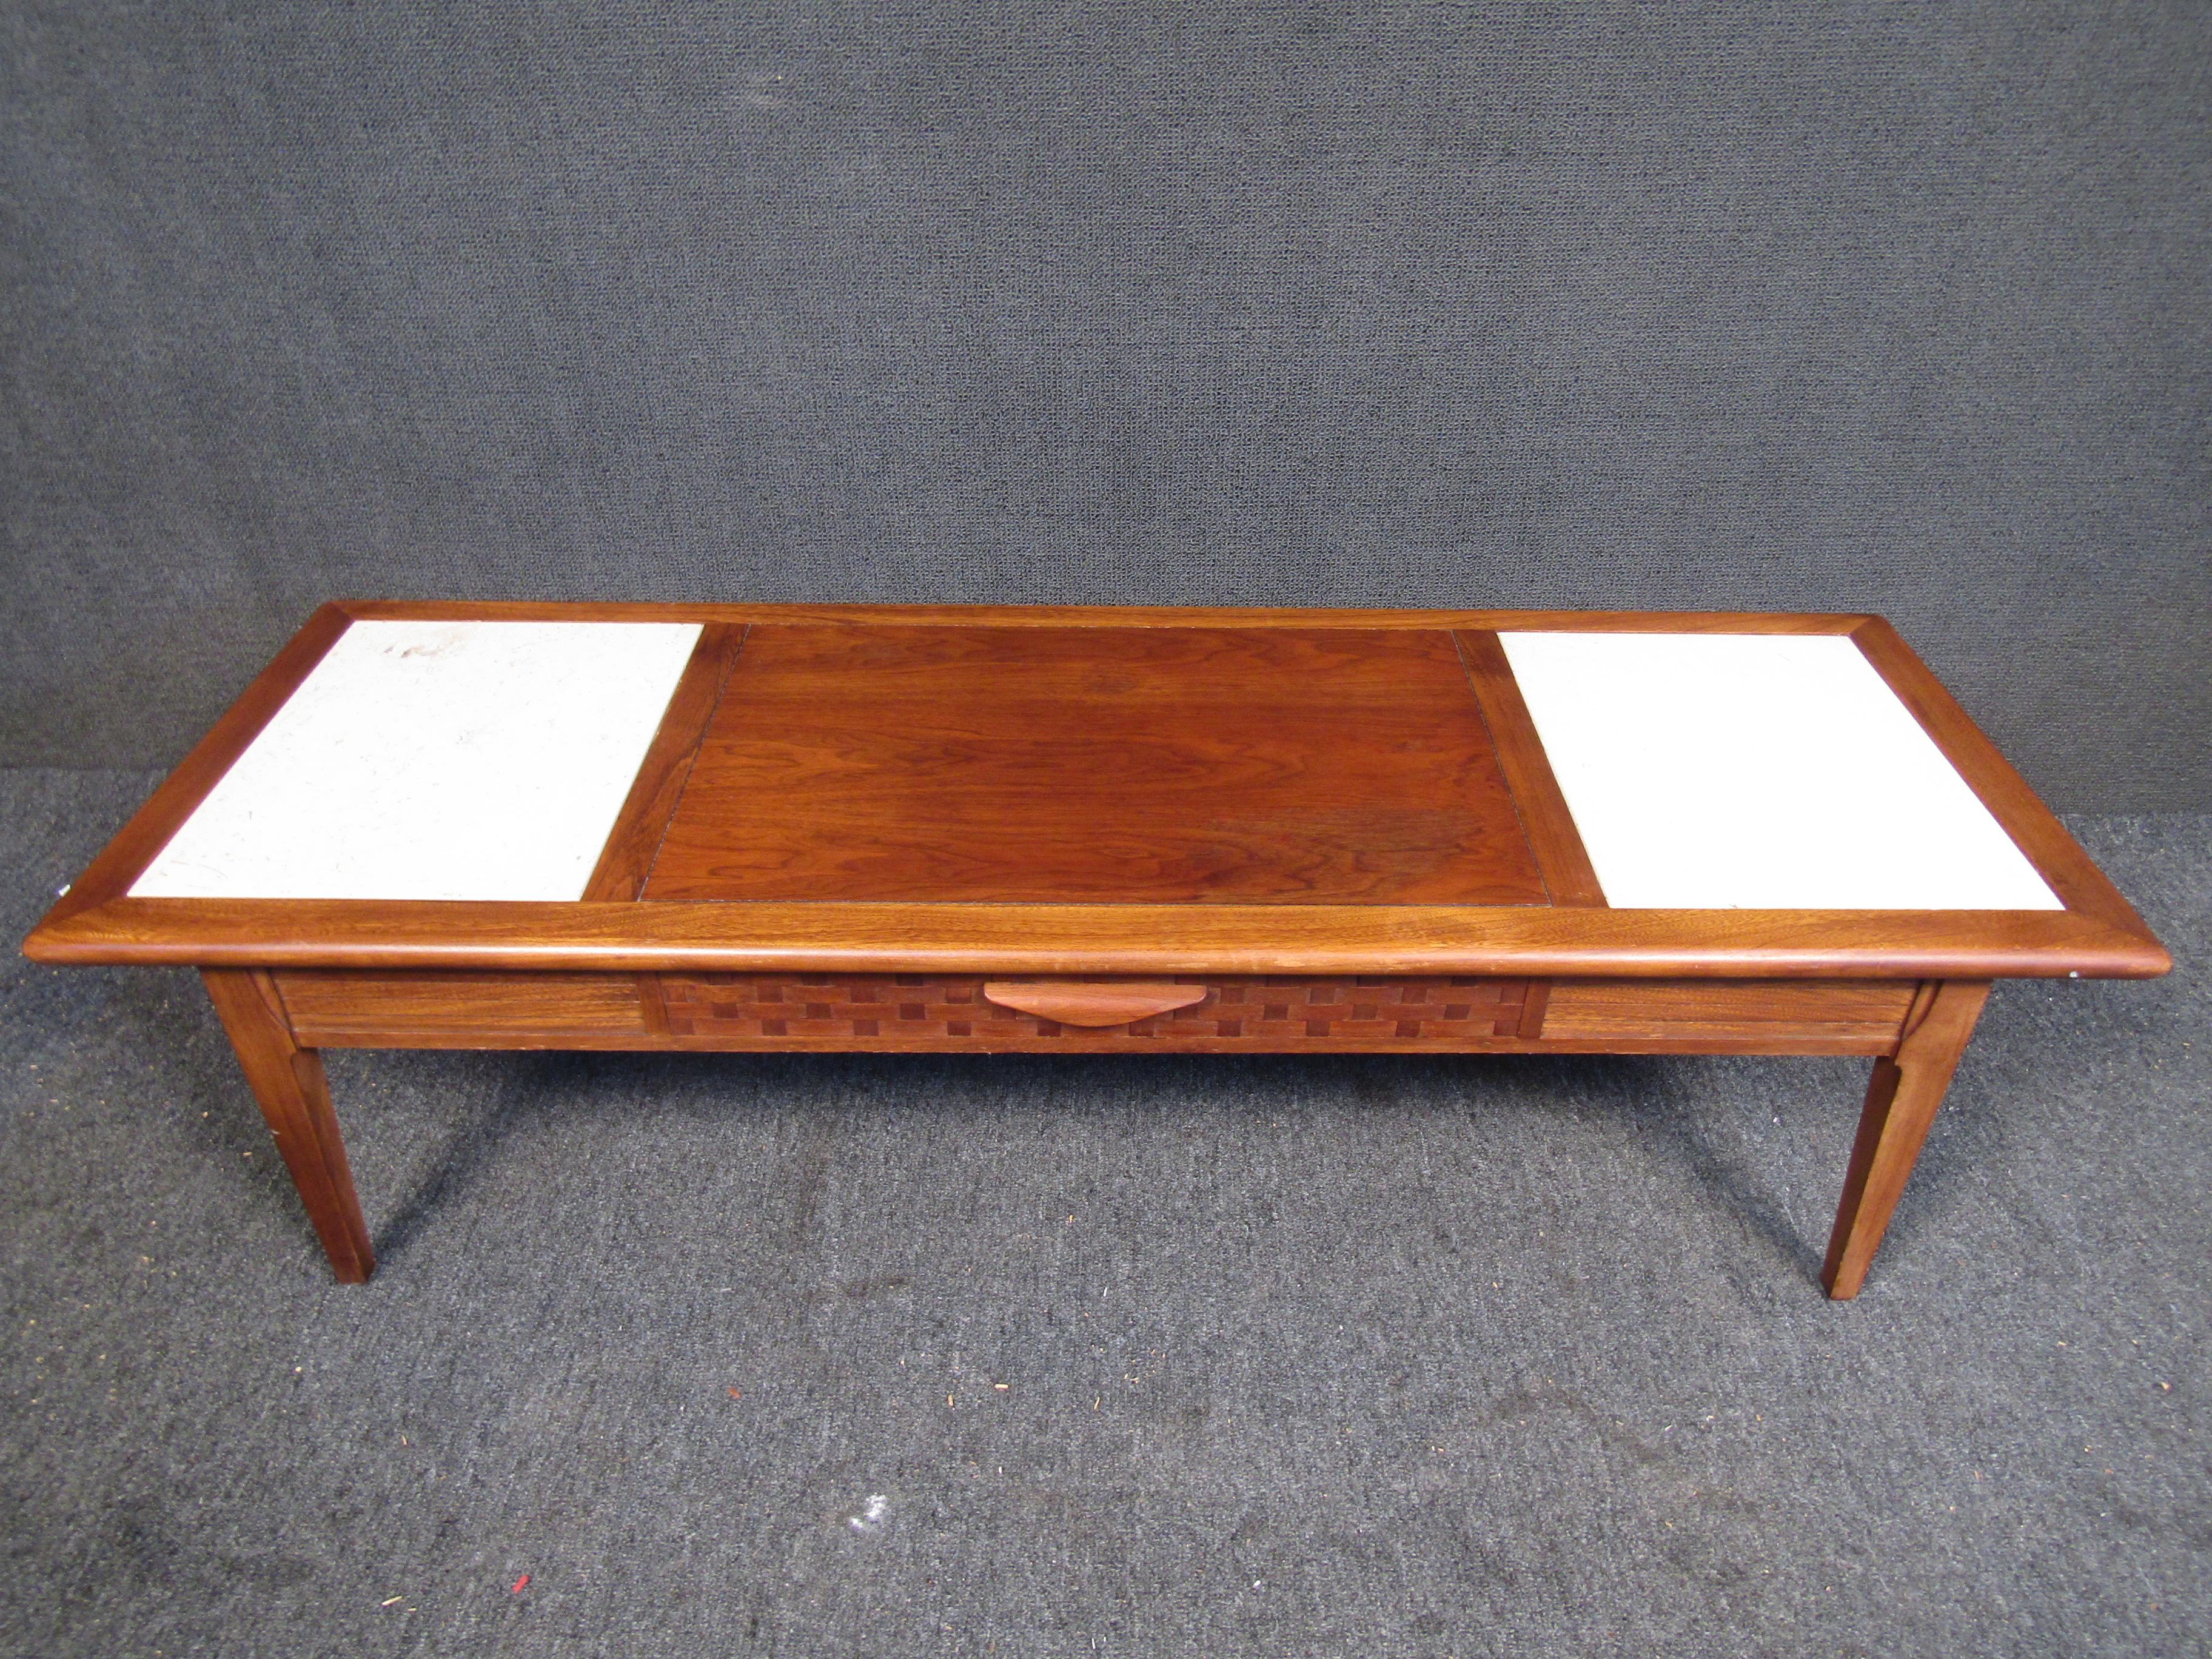 Couchtisch aus der Mitte des Jahrhunderts von Lane's. Dieser elegante Tisch zeichnet sich durch eine Konstruktion aus Nussbaum- und Eichenholz, Steineinsätze, eine geflochtene Front und konisch zulaufende Beine aus. Dieser Tisch passt perfekt in